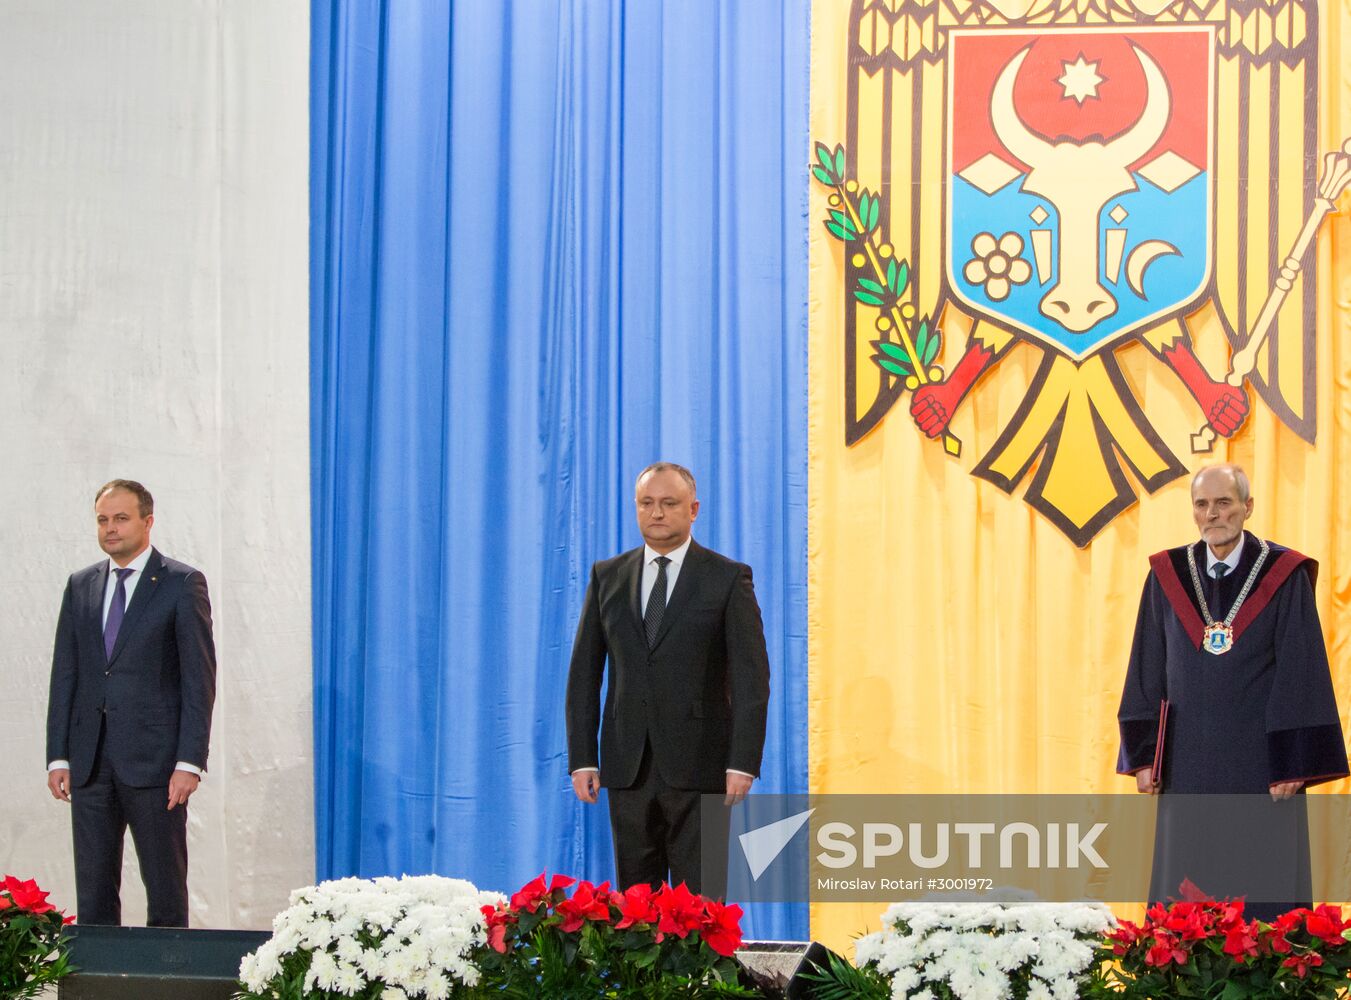 Moldova's president Igor Dodon sworn in